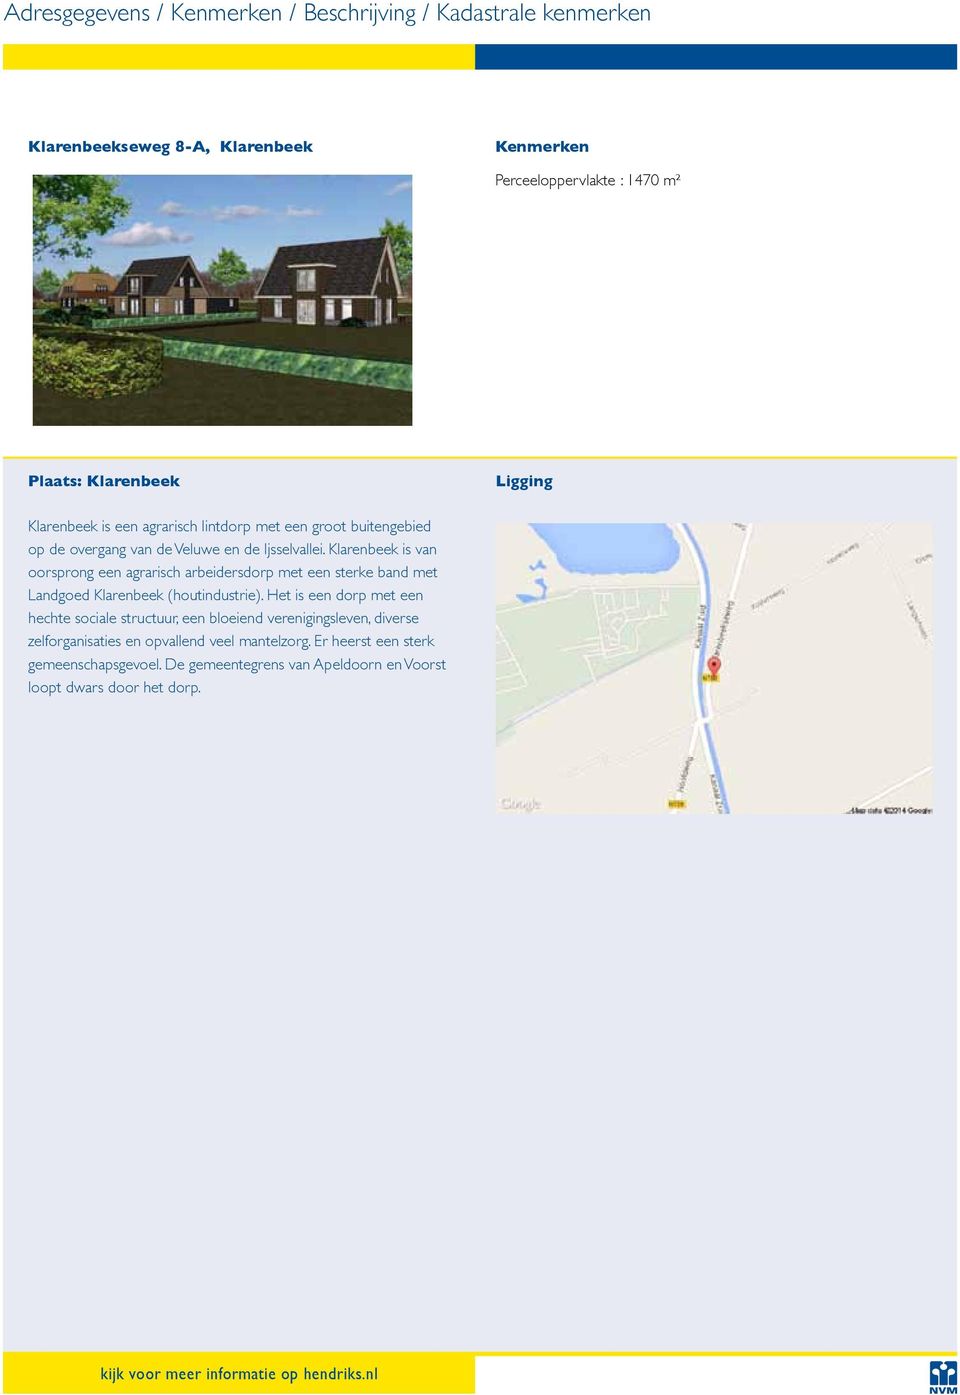 Klarenbeek is van oorsprong een agrarisch arbeidersdorp met een sterke band met Landgoed Klarenbeek (houtindustrie).